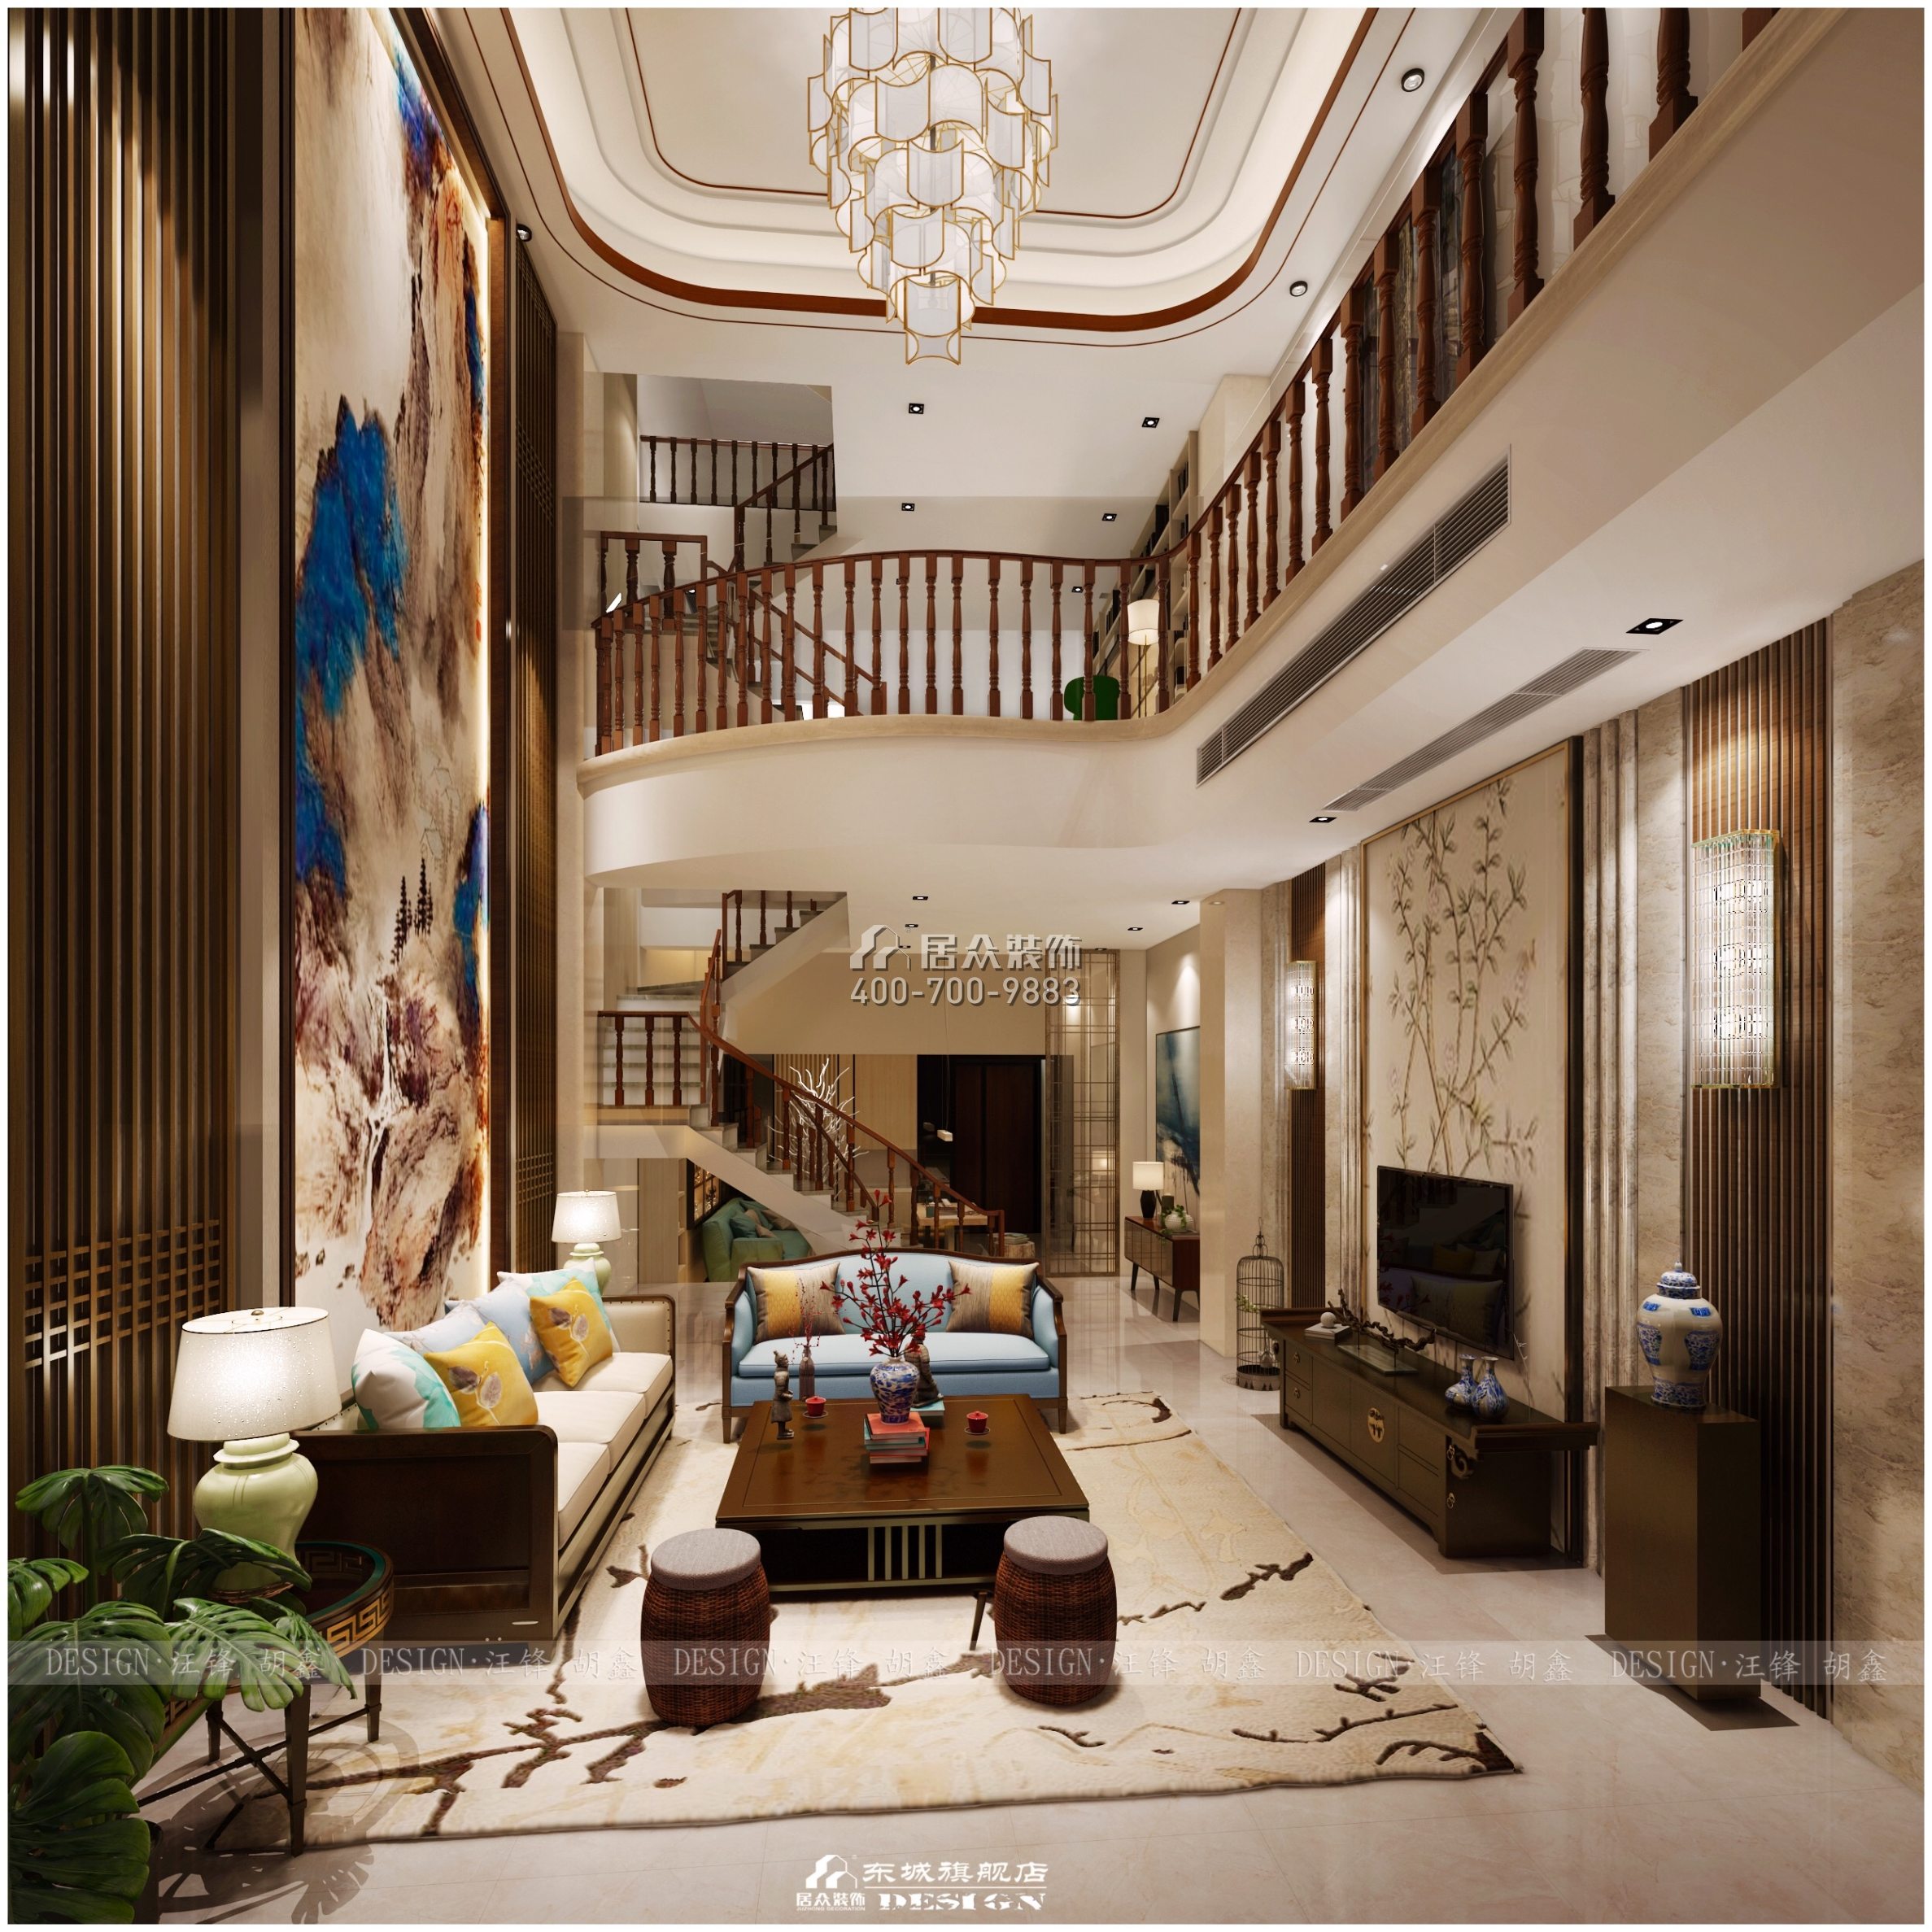 龙湖湘风原著320平方米中式风格别墅户型客厅装修效果图